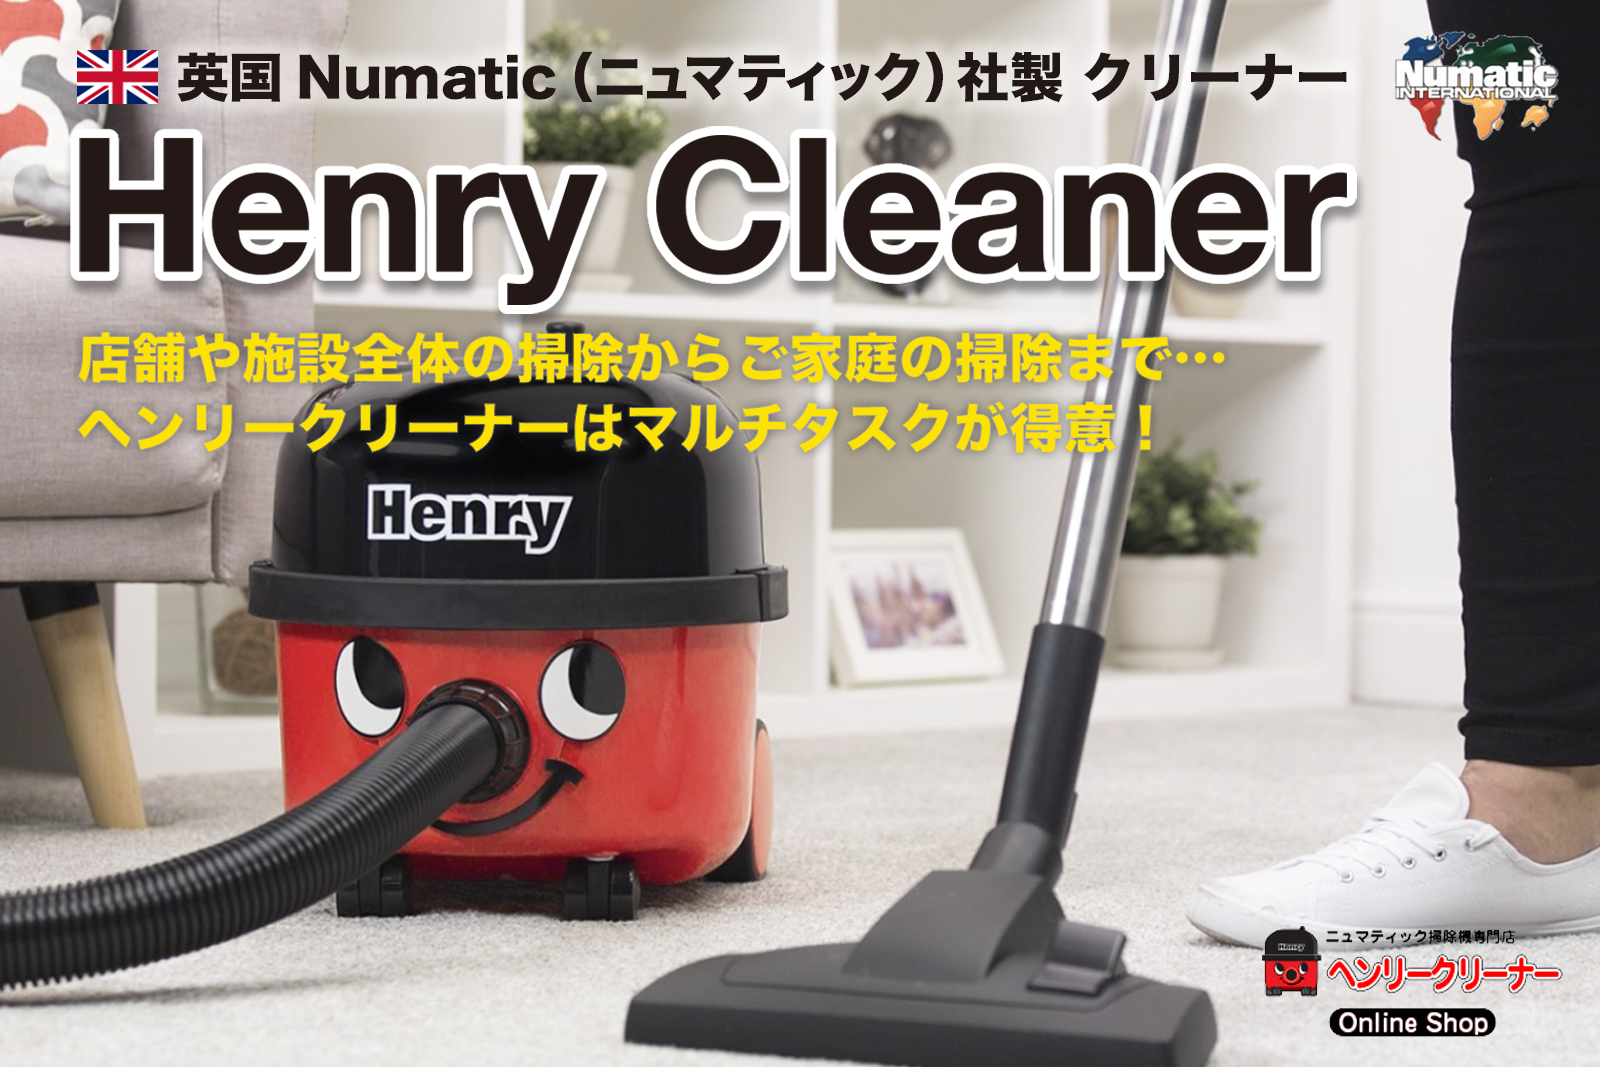 ヘンリークリーナー・オンラインショップ 英国・ニュマティック社製 ヘンリー掃除機専門ECサイト